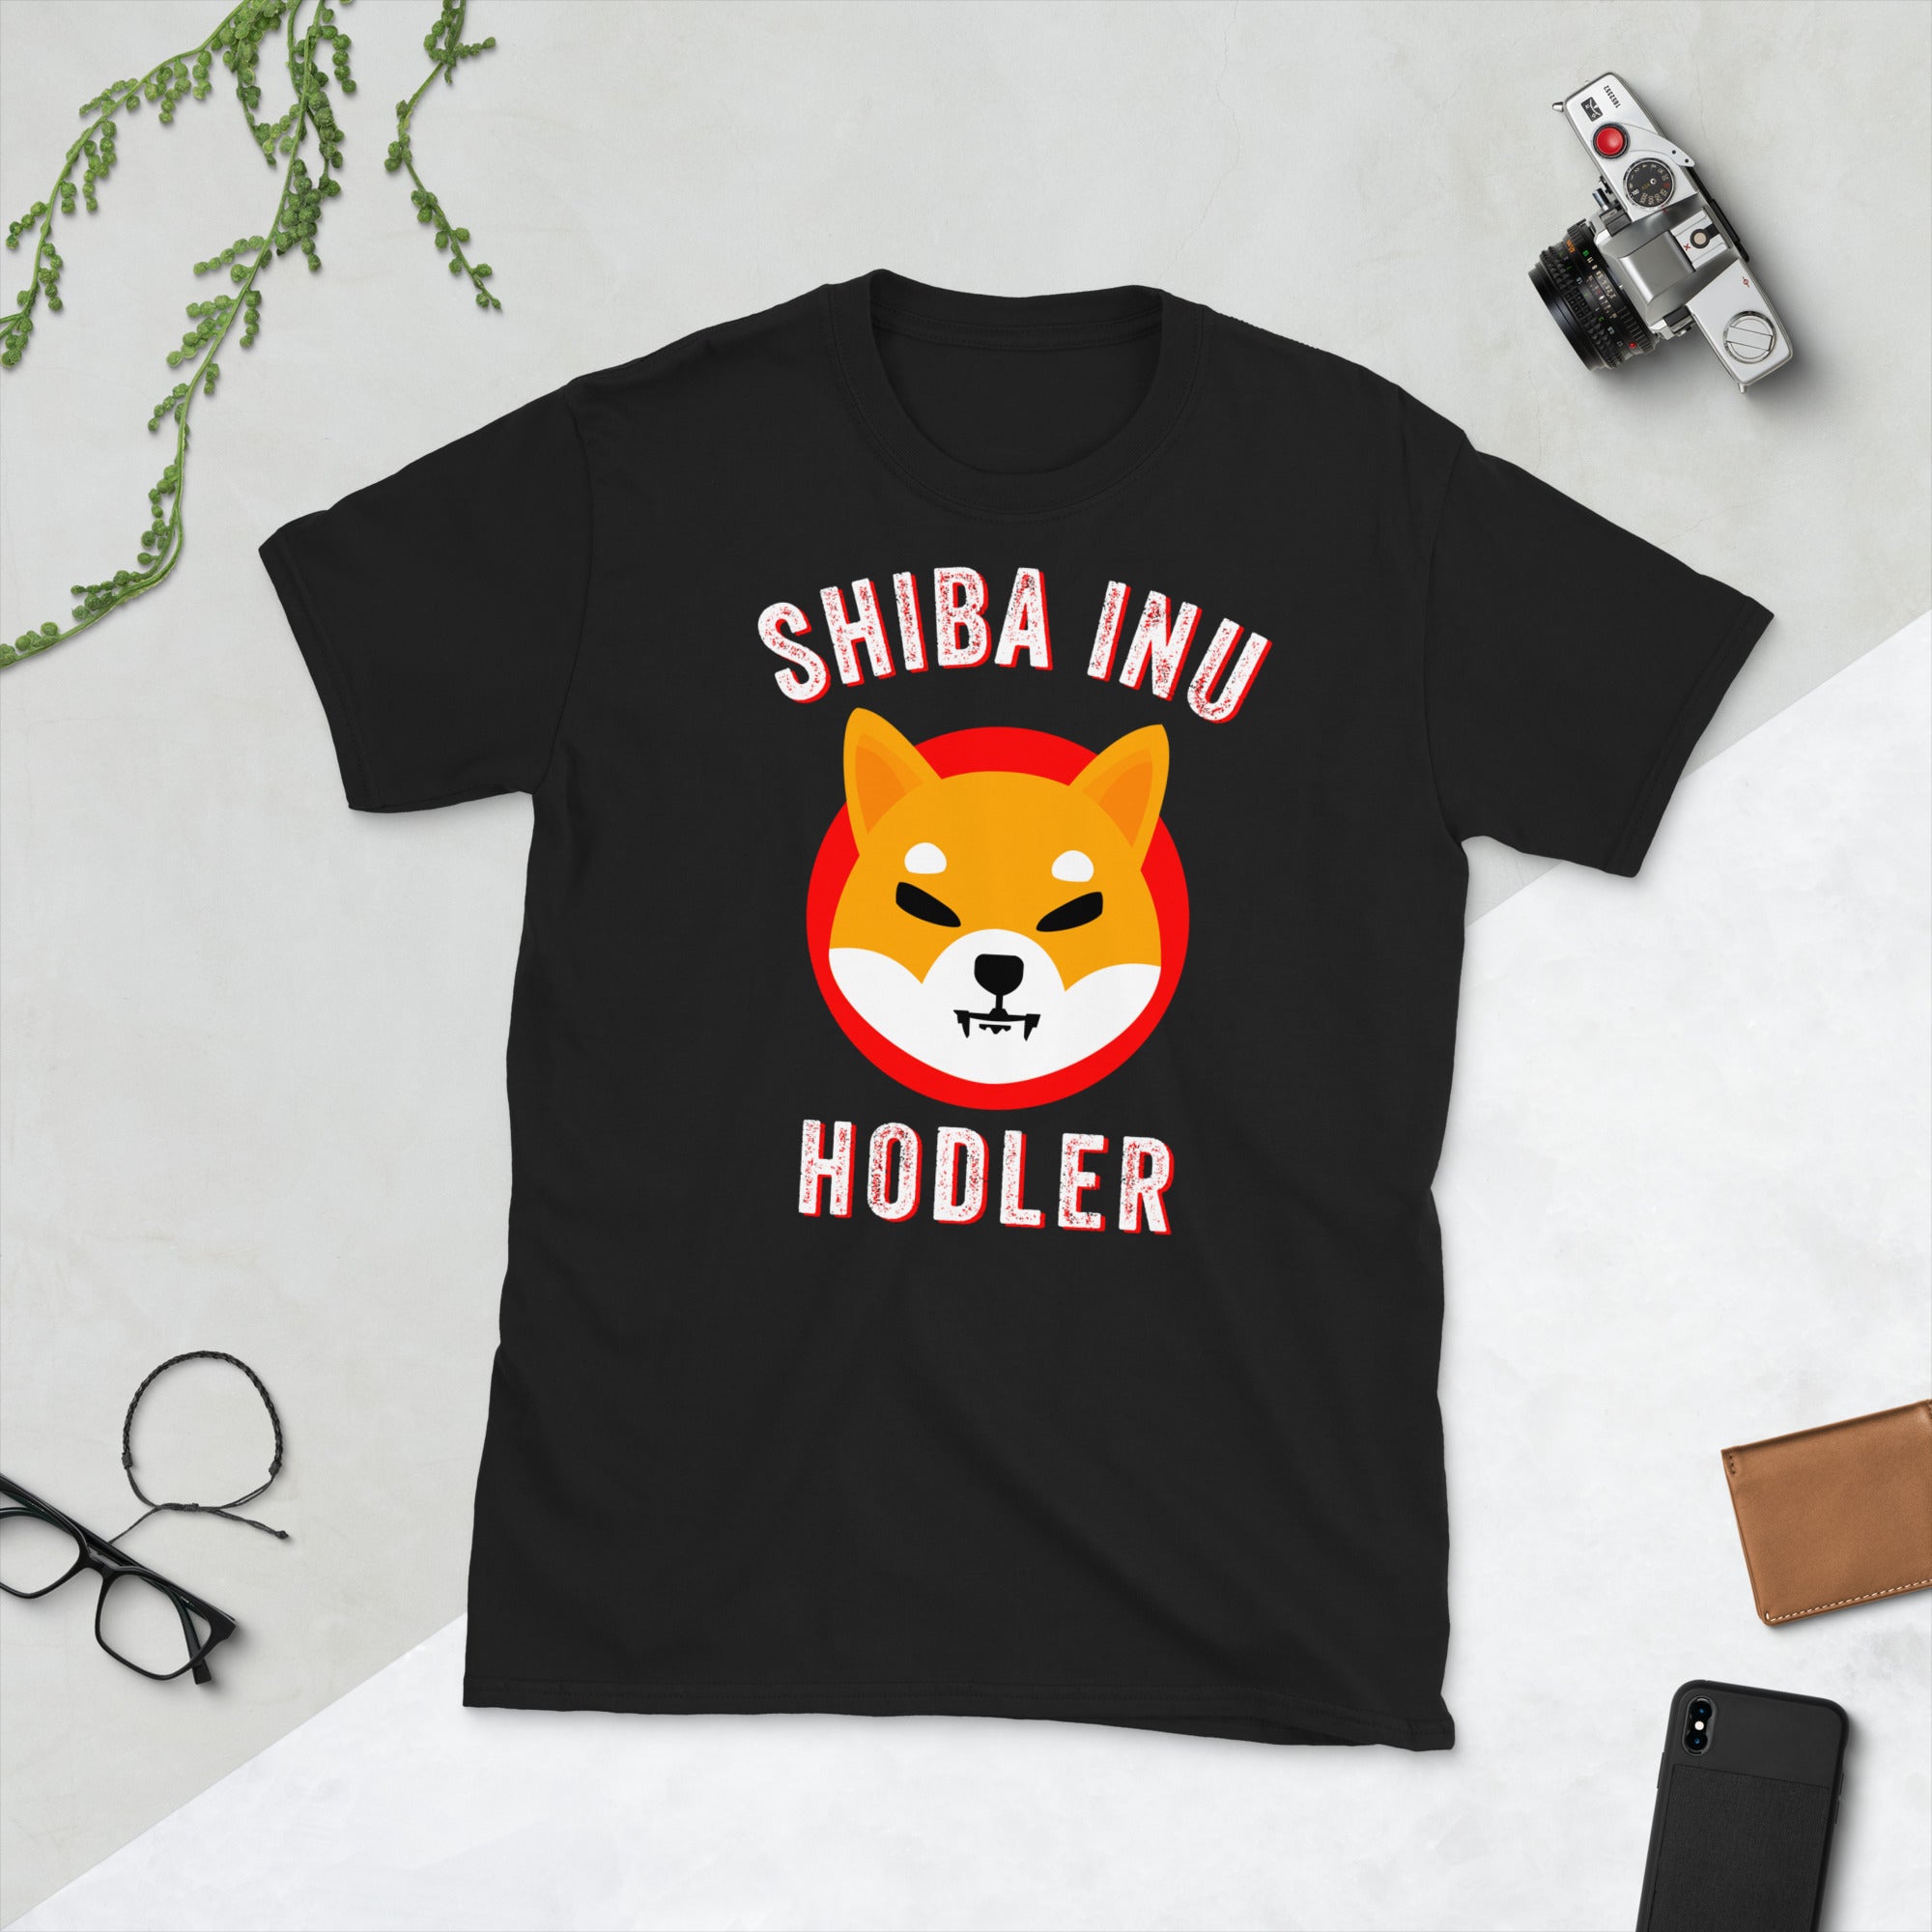 Shiba Inu Coin Shirt, Shiba Inu Coin, Shiba Inu Shirt, Shiba Inu Token, Shib Coin Shirt, Shiba Coin, Shiba Inu Token Shirt, Shiba Inu Crypto - Madeinsea©